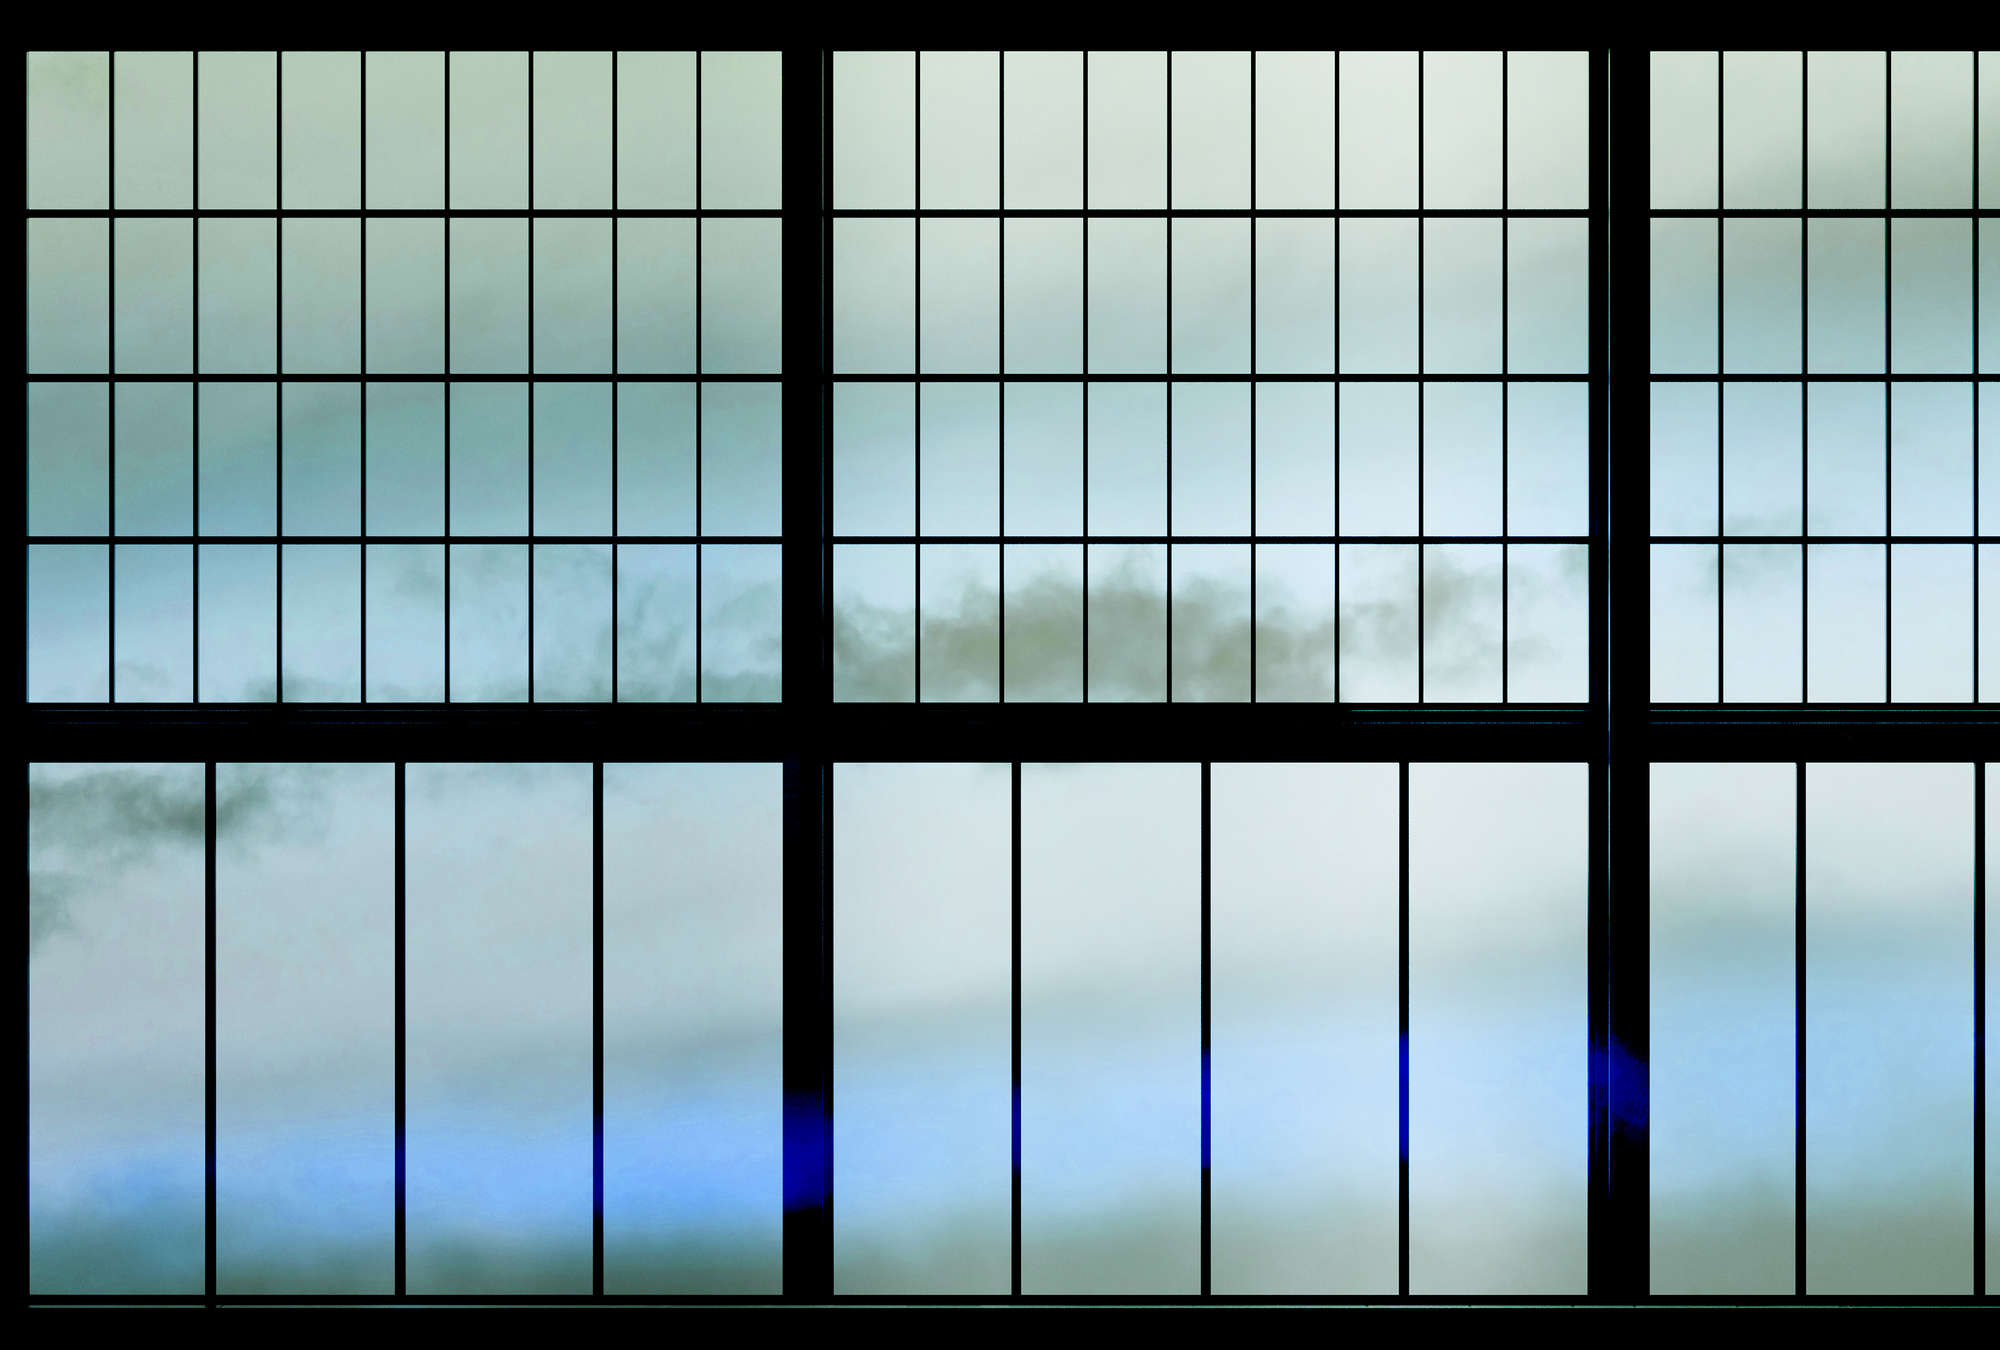             Sky 3 - Muntin Window with Cloudy Sky Onderlaag behang - Blauw, Zwart | Textured Nonwoven
        